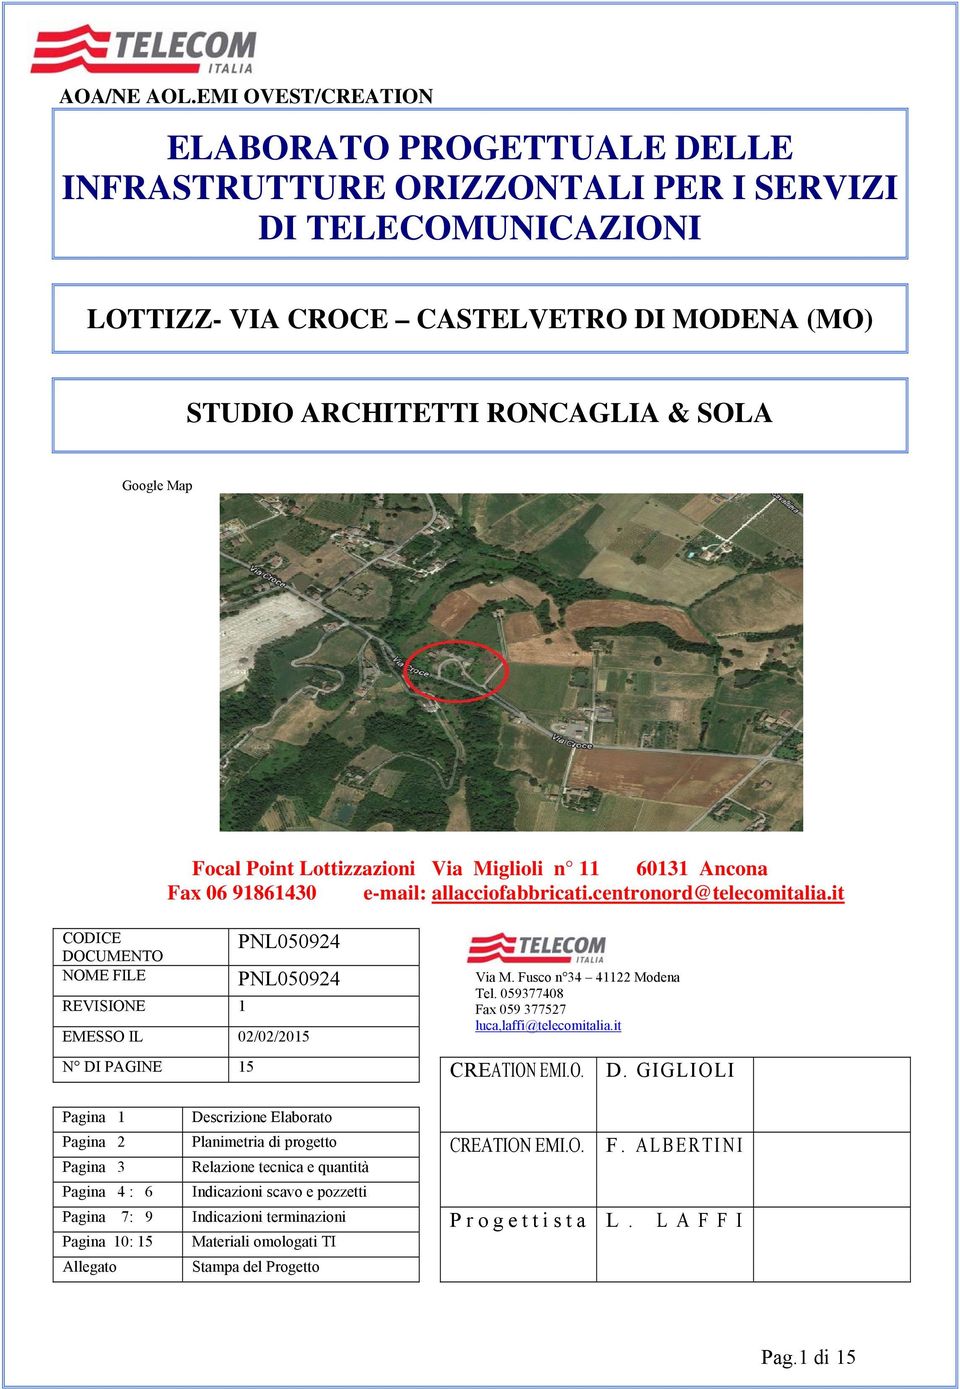 Map Focal Point Lottizzazioni Via Miglioli n 11 60131 Ancona Fax 06 91861430 e-mail: allacciofabbricati.centronord@telecomitalia.